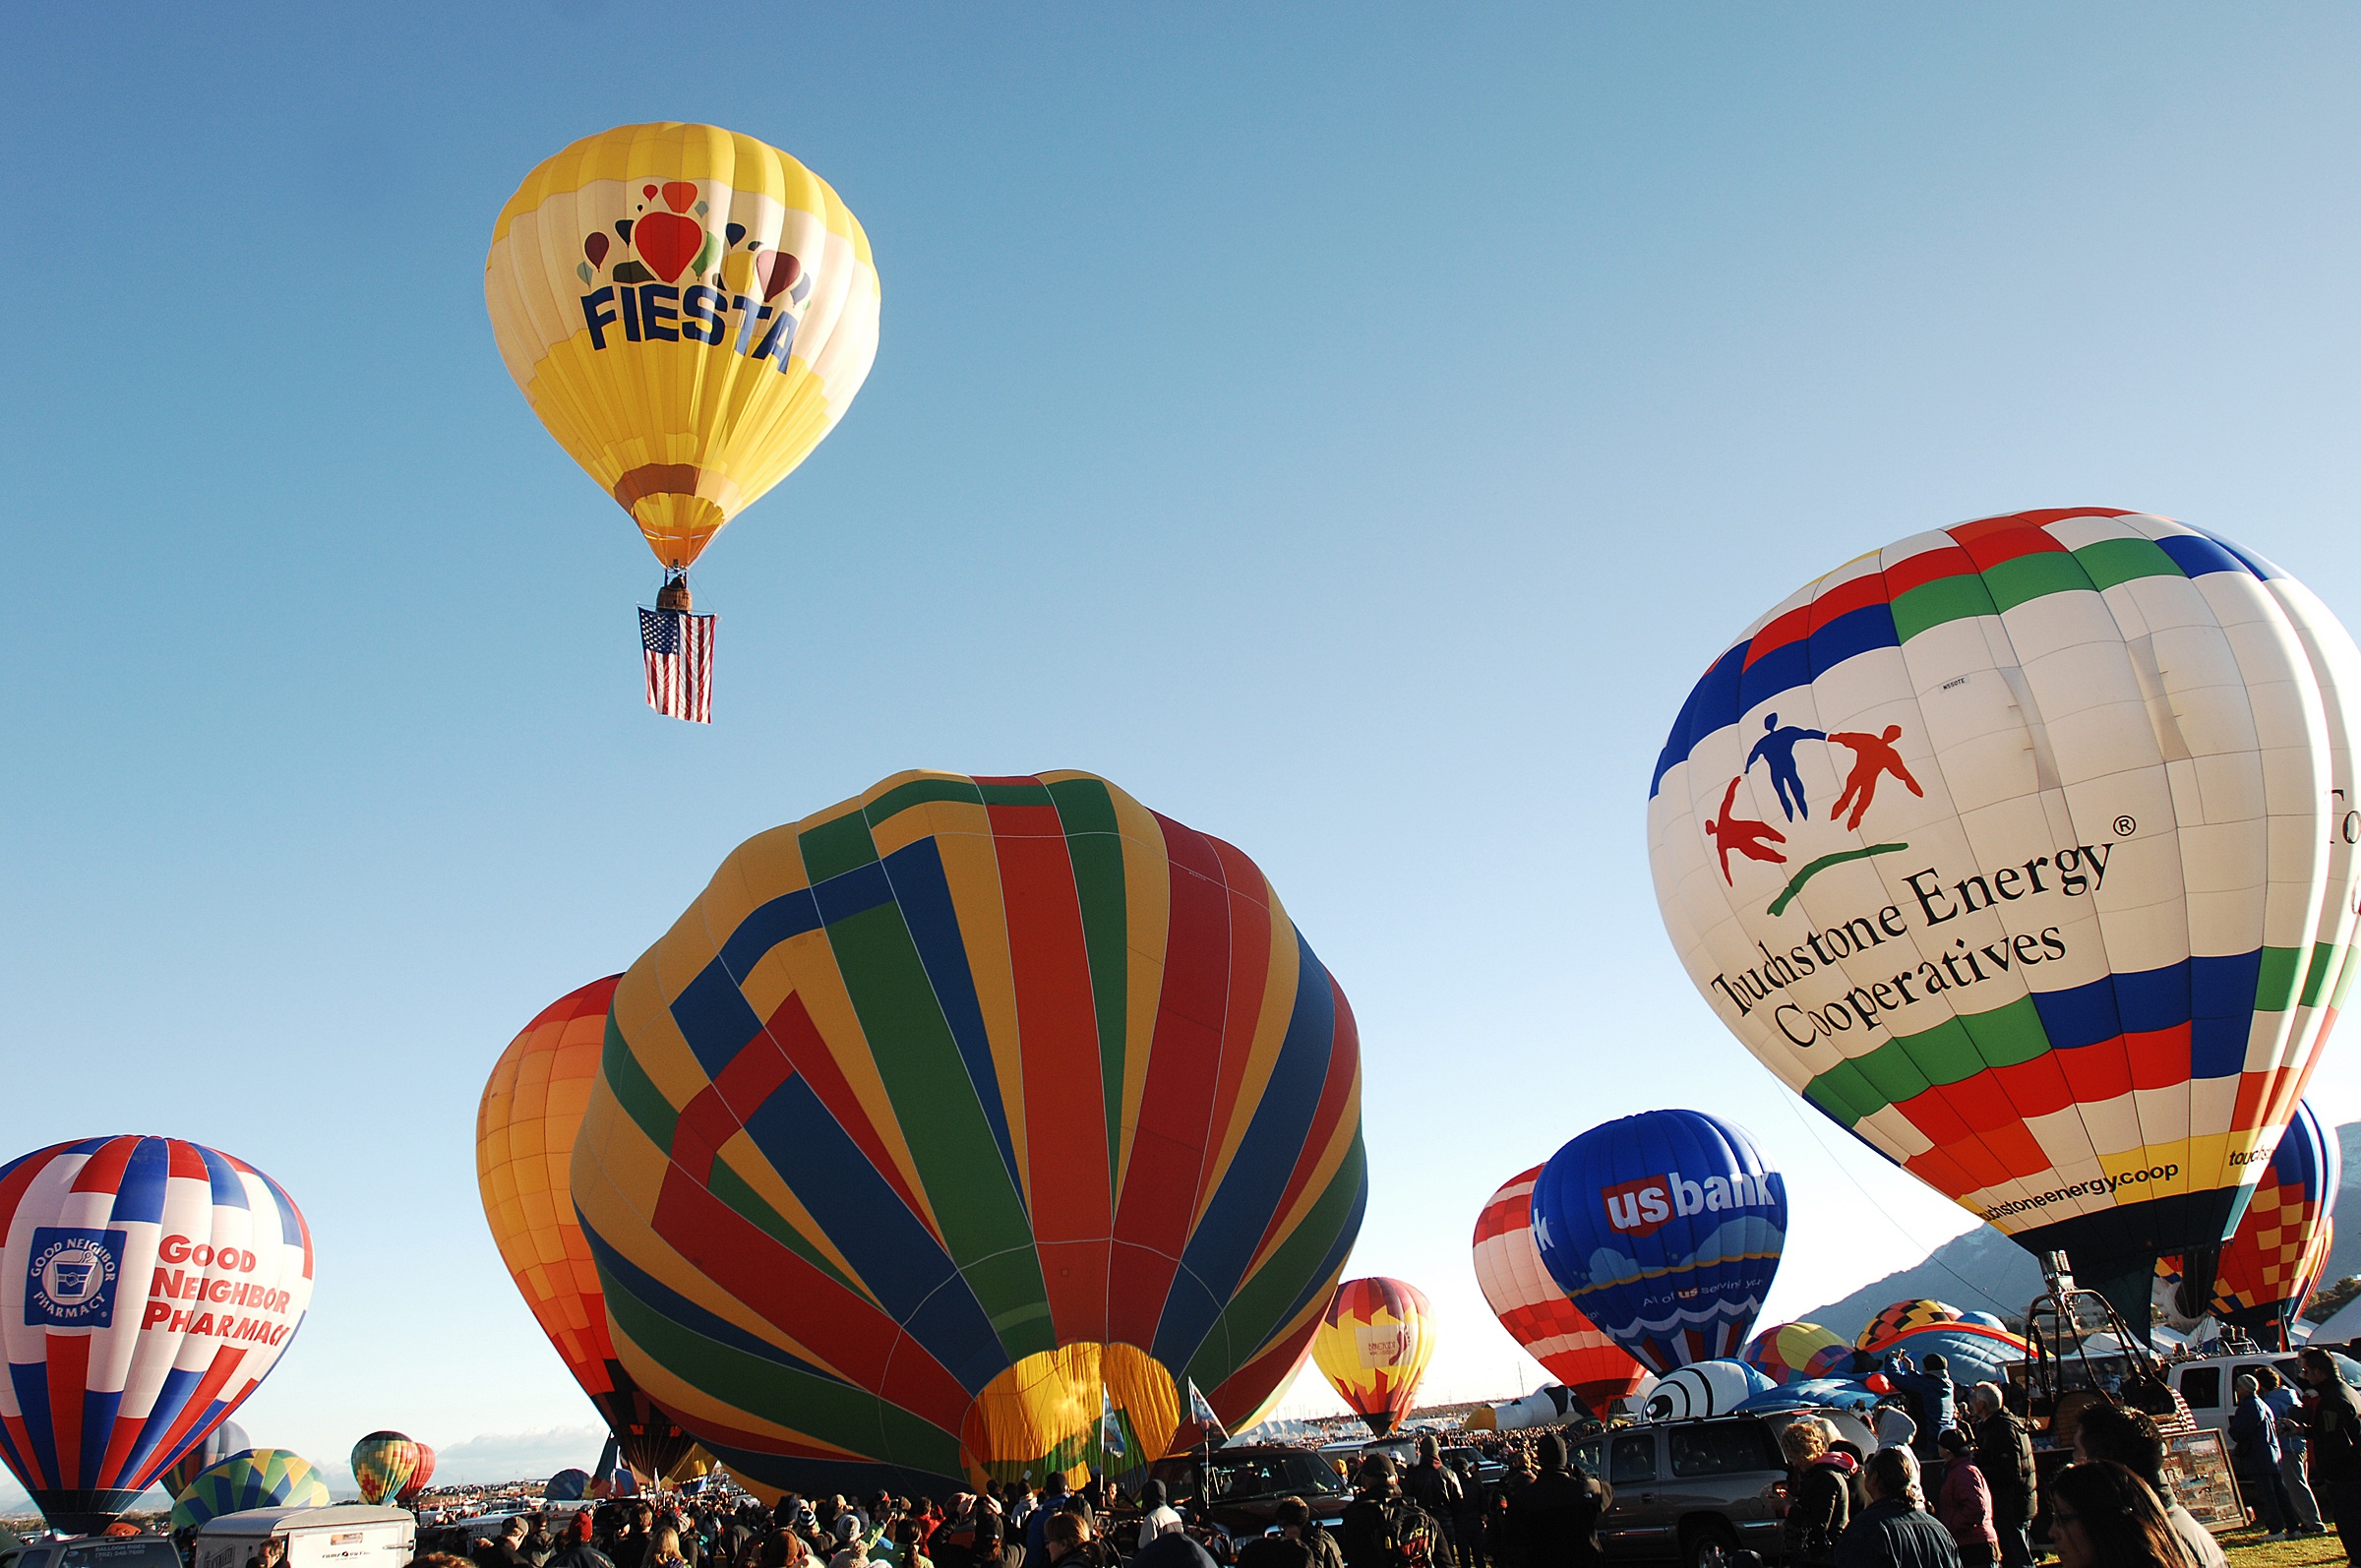 Balloon Ride, Activity, Balloon, Human, People, HQ Photo